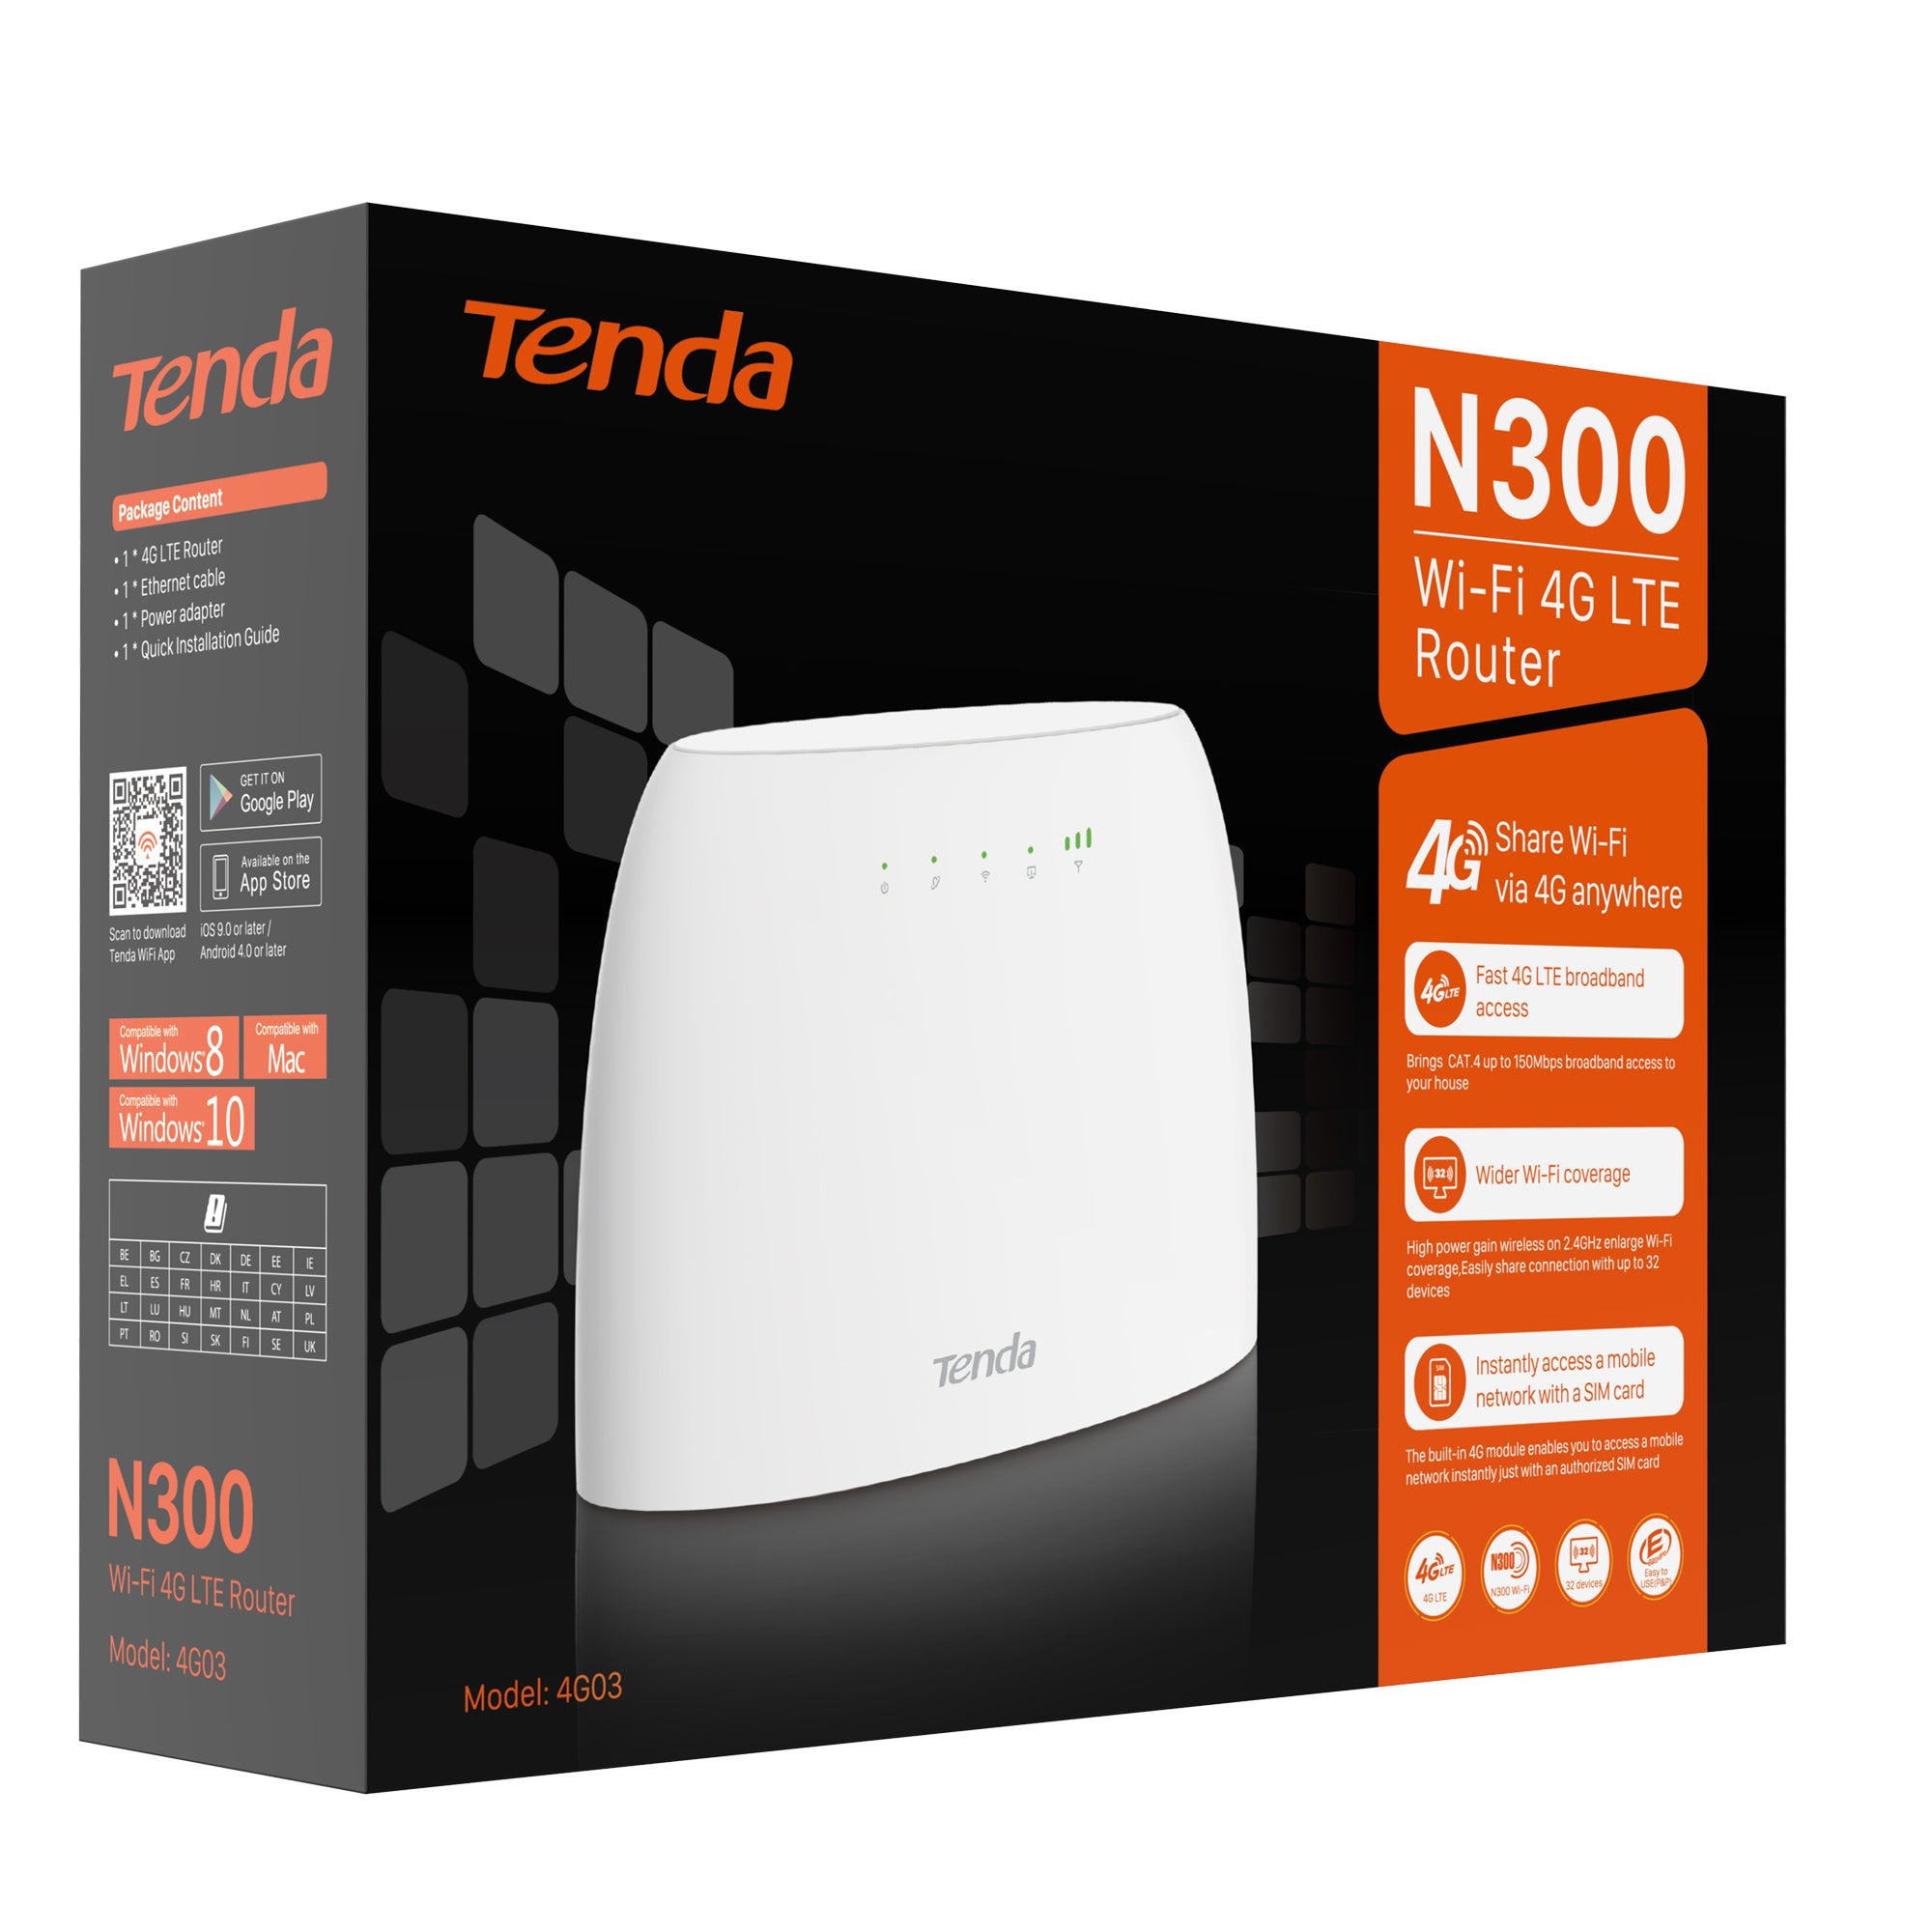 tenda-router-wi-fi-4g-lte-n300-cat-4